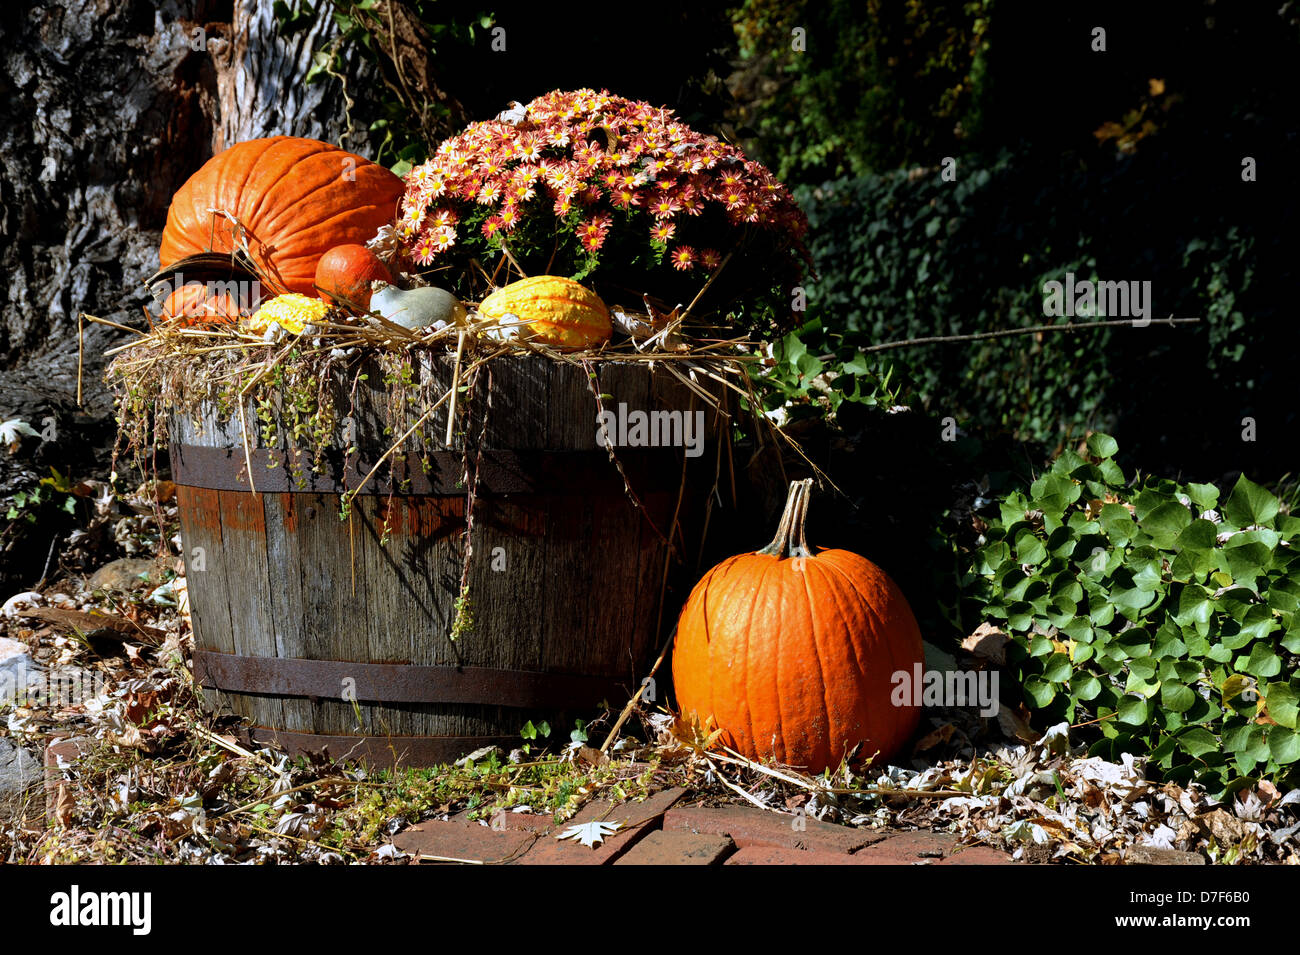 Autunno fiori e zucche in barile vecchio Shepherdstown Jefferson county West Virginia, zucche, autunno fiori, carro, Foto Stock